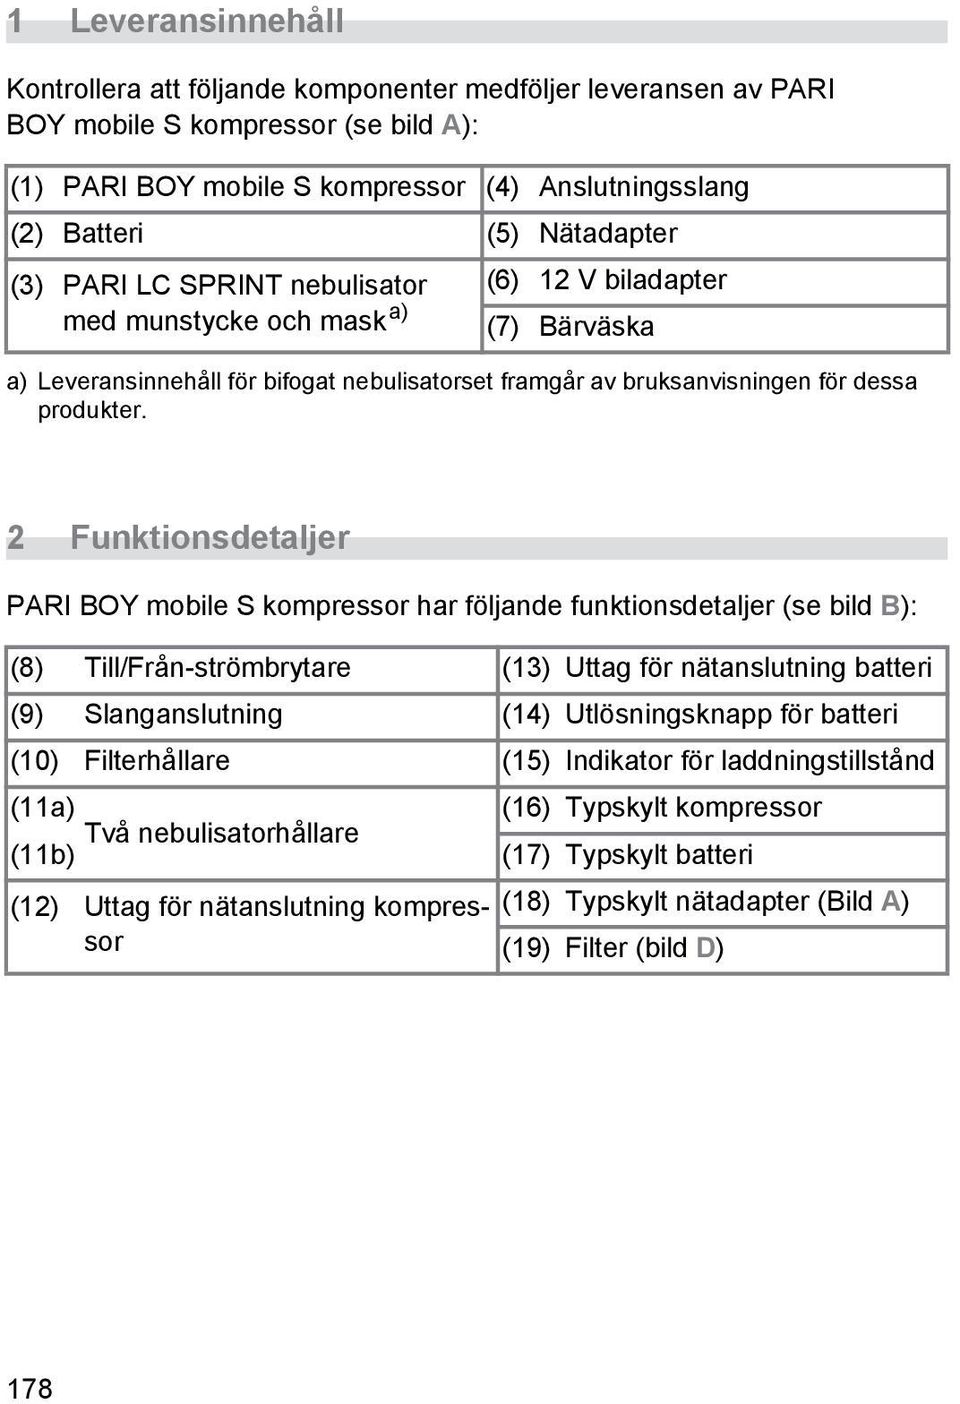 2 Funktionsdetaljer PARI BOY mobile S kompressor har följande funktionsdetaljer (se bild B): (8) Till/Från-strömbrytare (13) Uttag för nätanslutning batteri (9) Slanganslutning (14) Utlösningsknapp